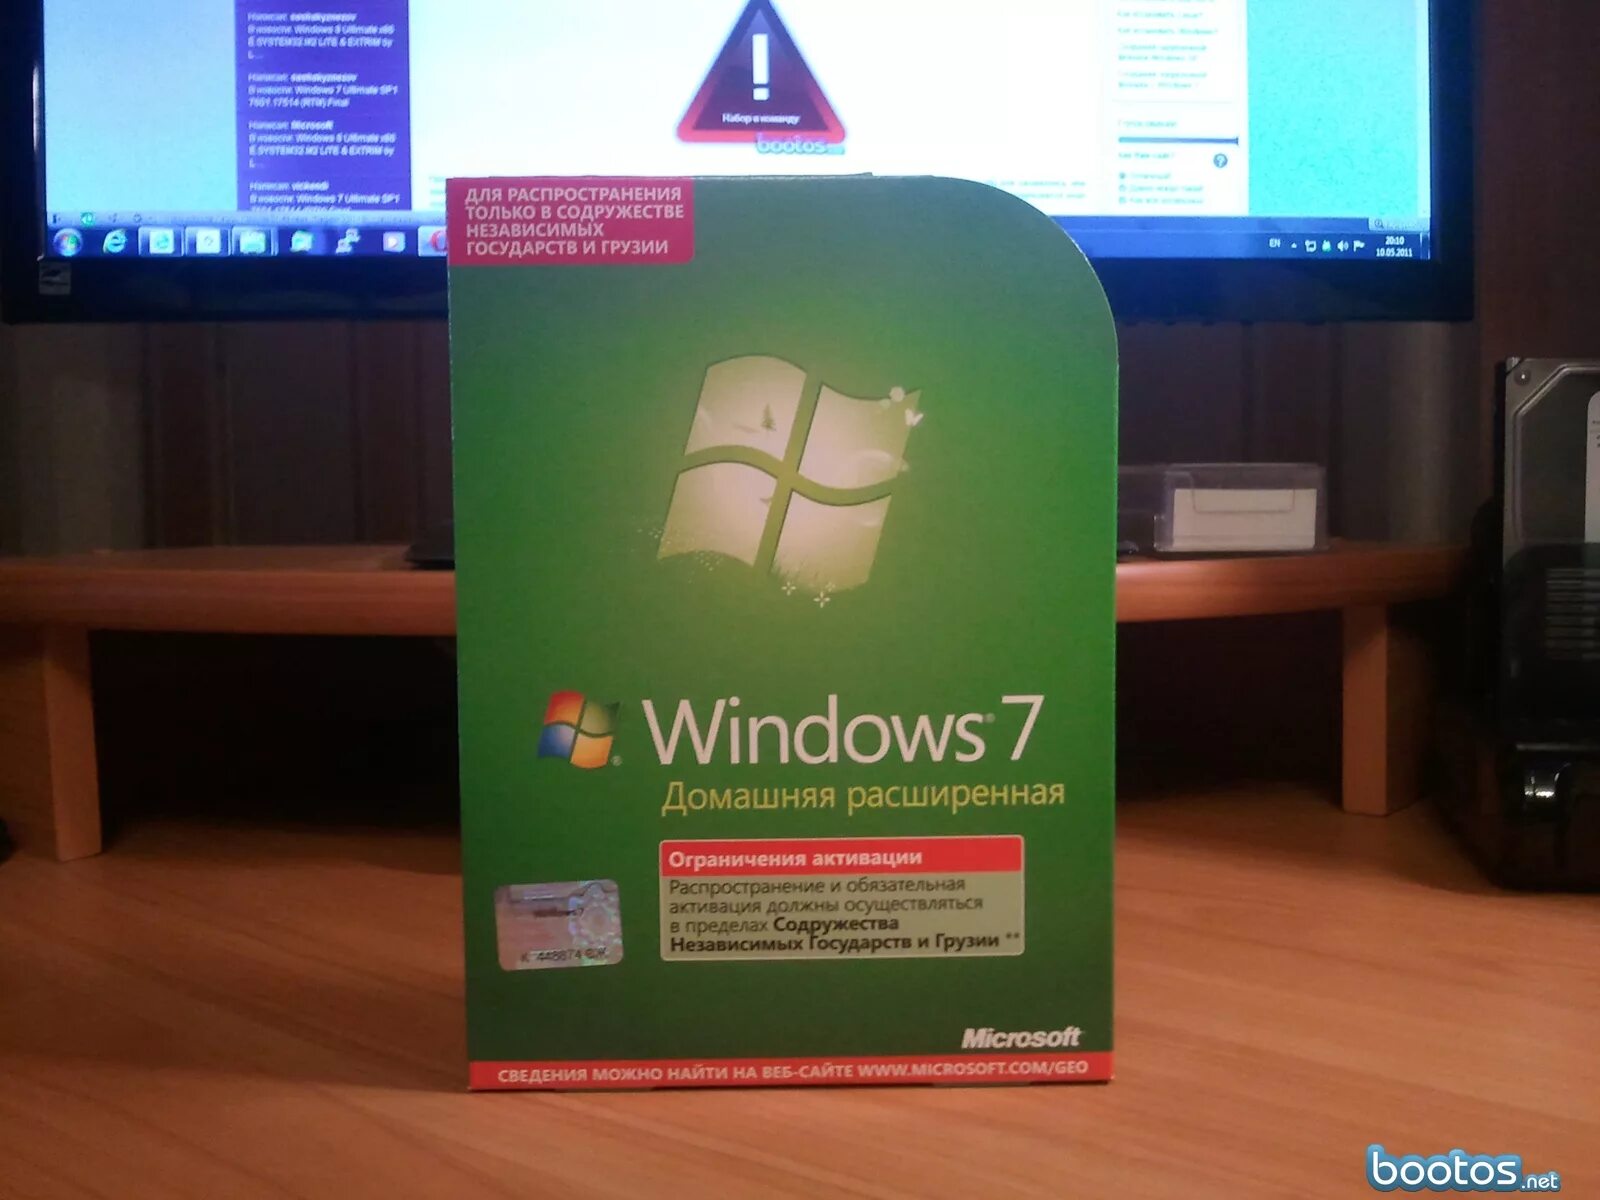 Домашний 7.1 купить. Windows домашняя расширенная. Виндовс 7 домашняя расширенная. Виндовс 7 домашний расширенный. Виндовс 7 домашняя расширенная диск.